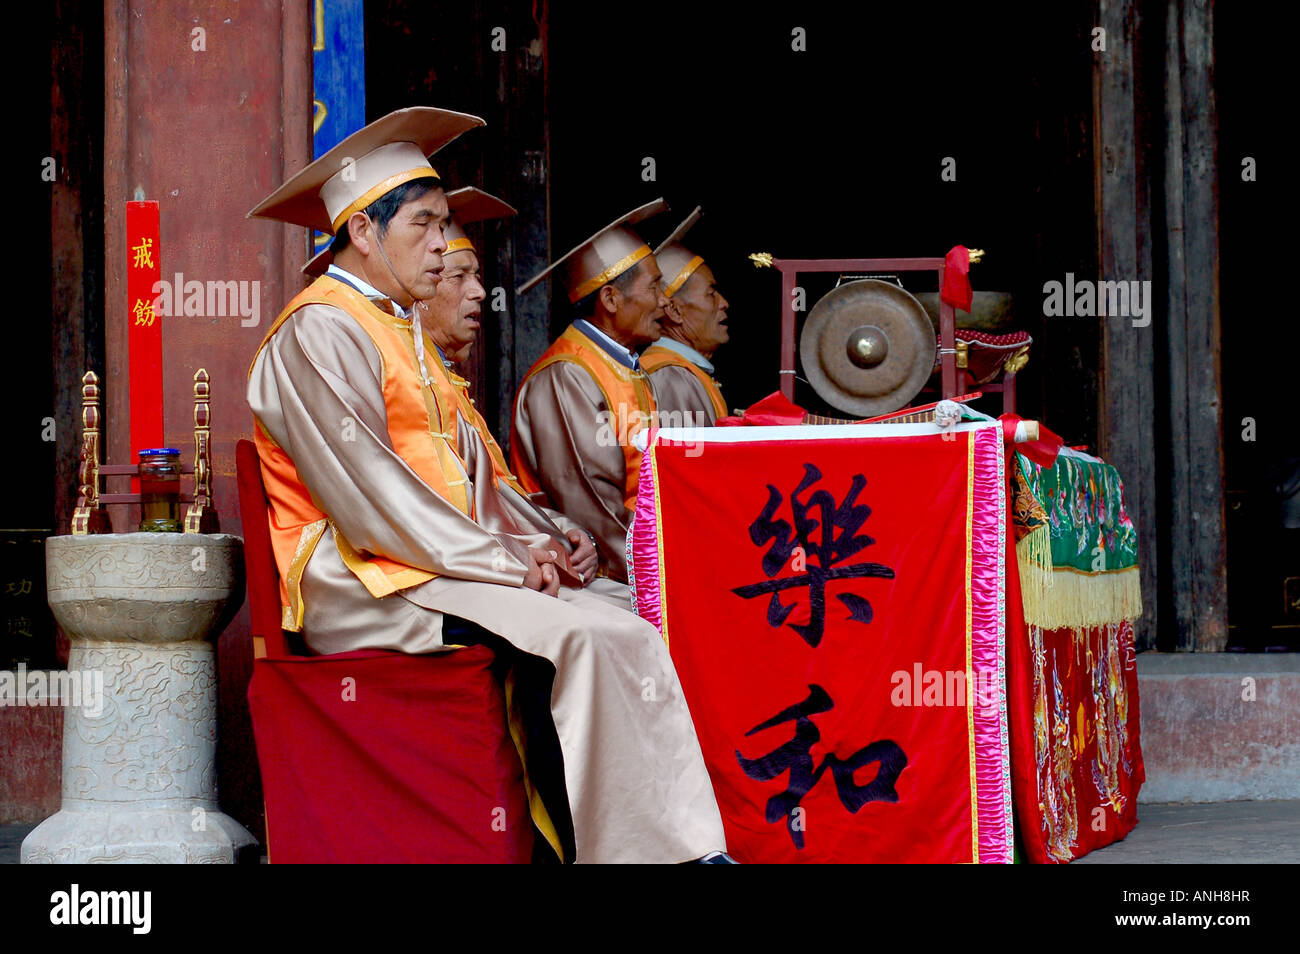 Confucius temple people have Confucius fiesta. Stock Photo